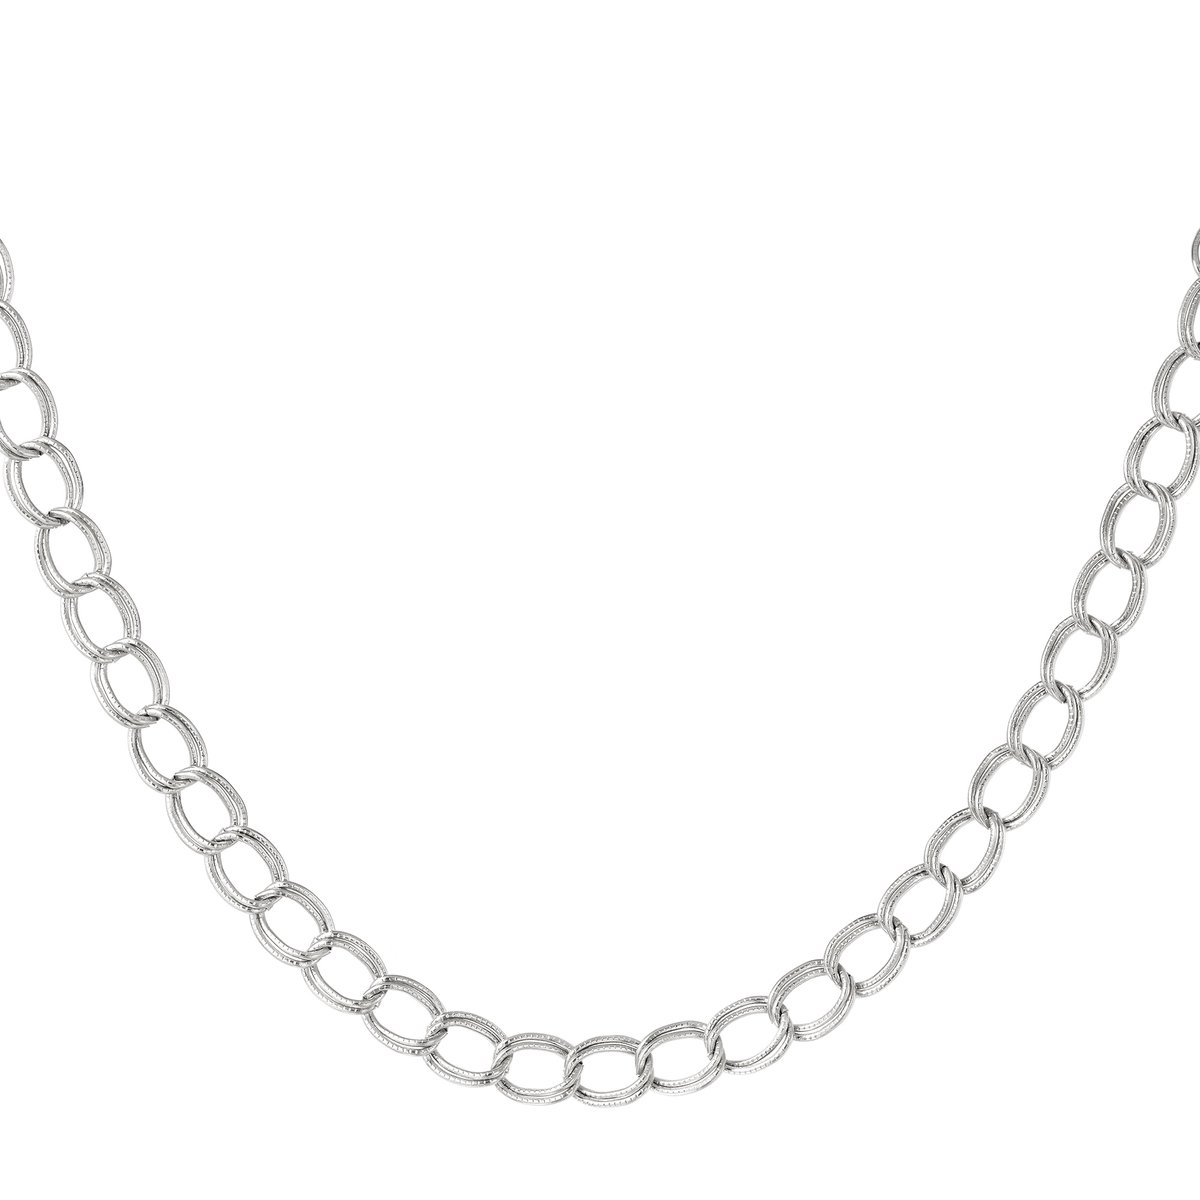 Stainless Steel Necklace - Yehwang - Schakelketting - 39 + 5 cm - Zilver